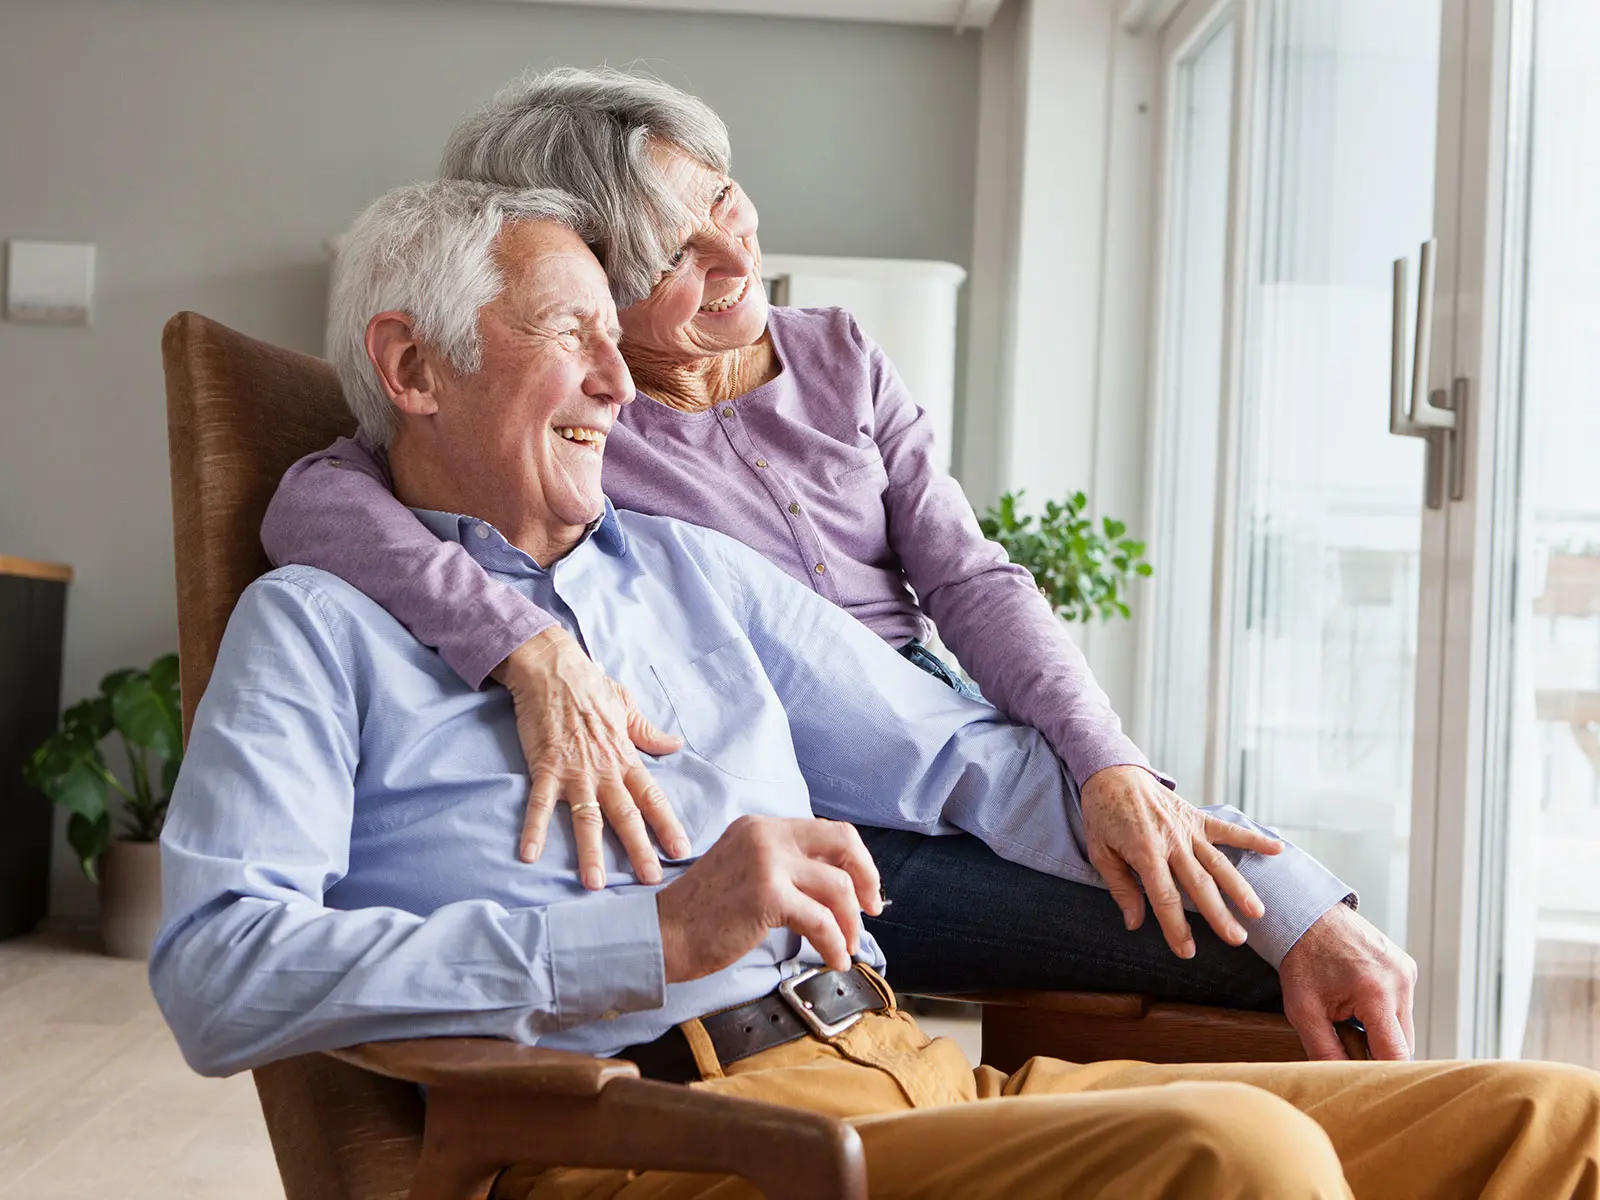 Un couple de personnes âgées sont assis ensemble sur une chaise. Ils regardent dehors et semblent heureux.